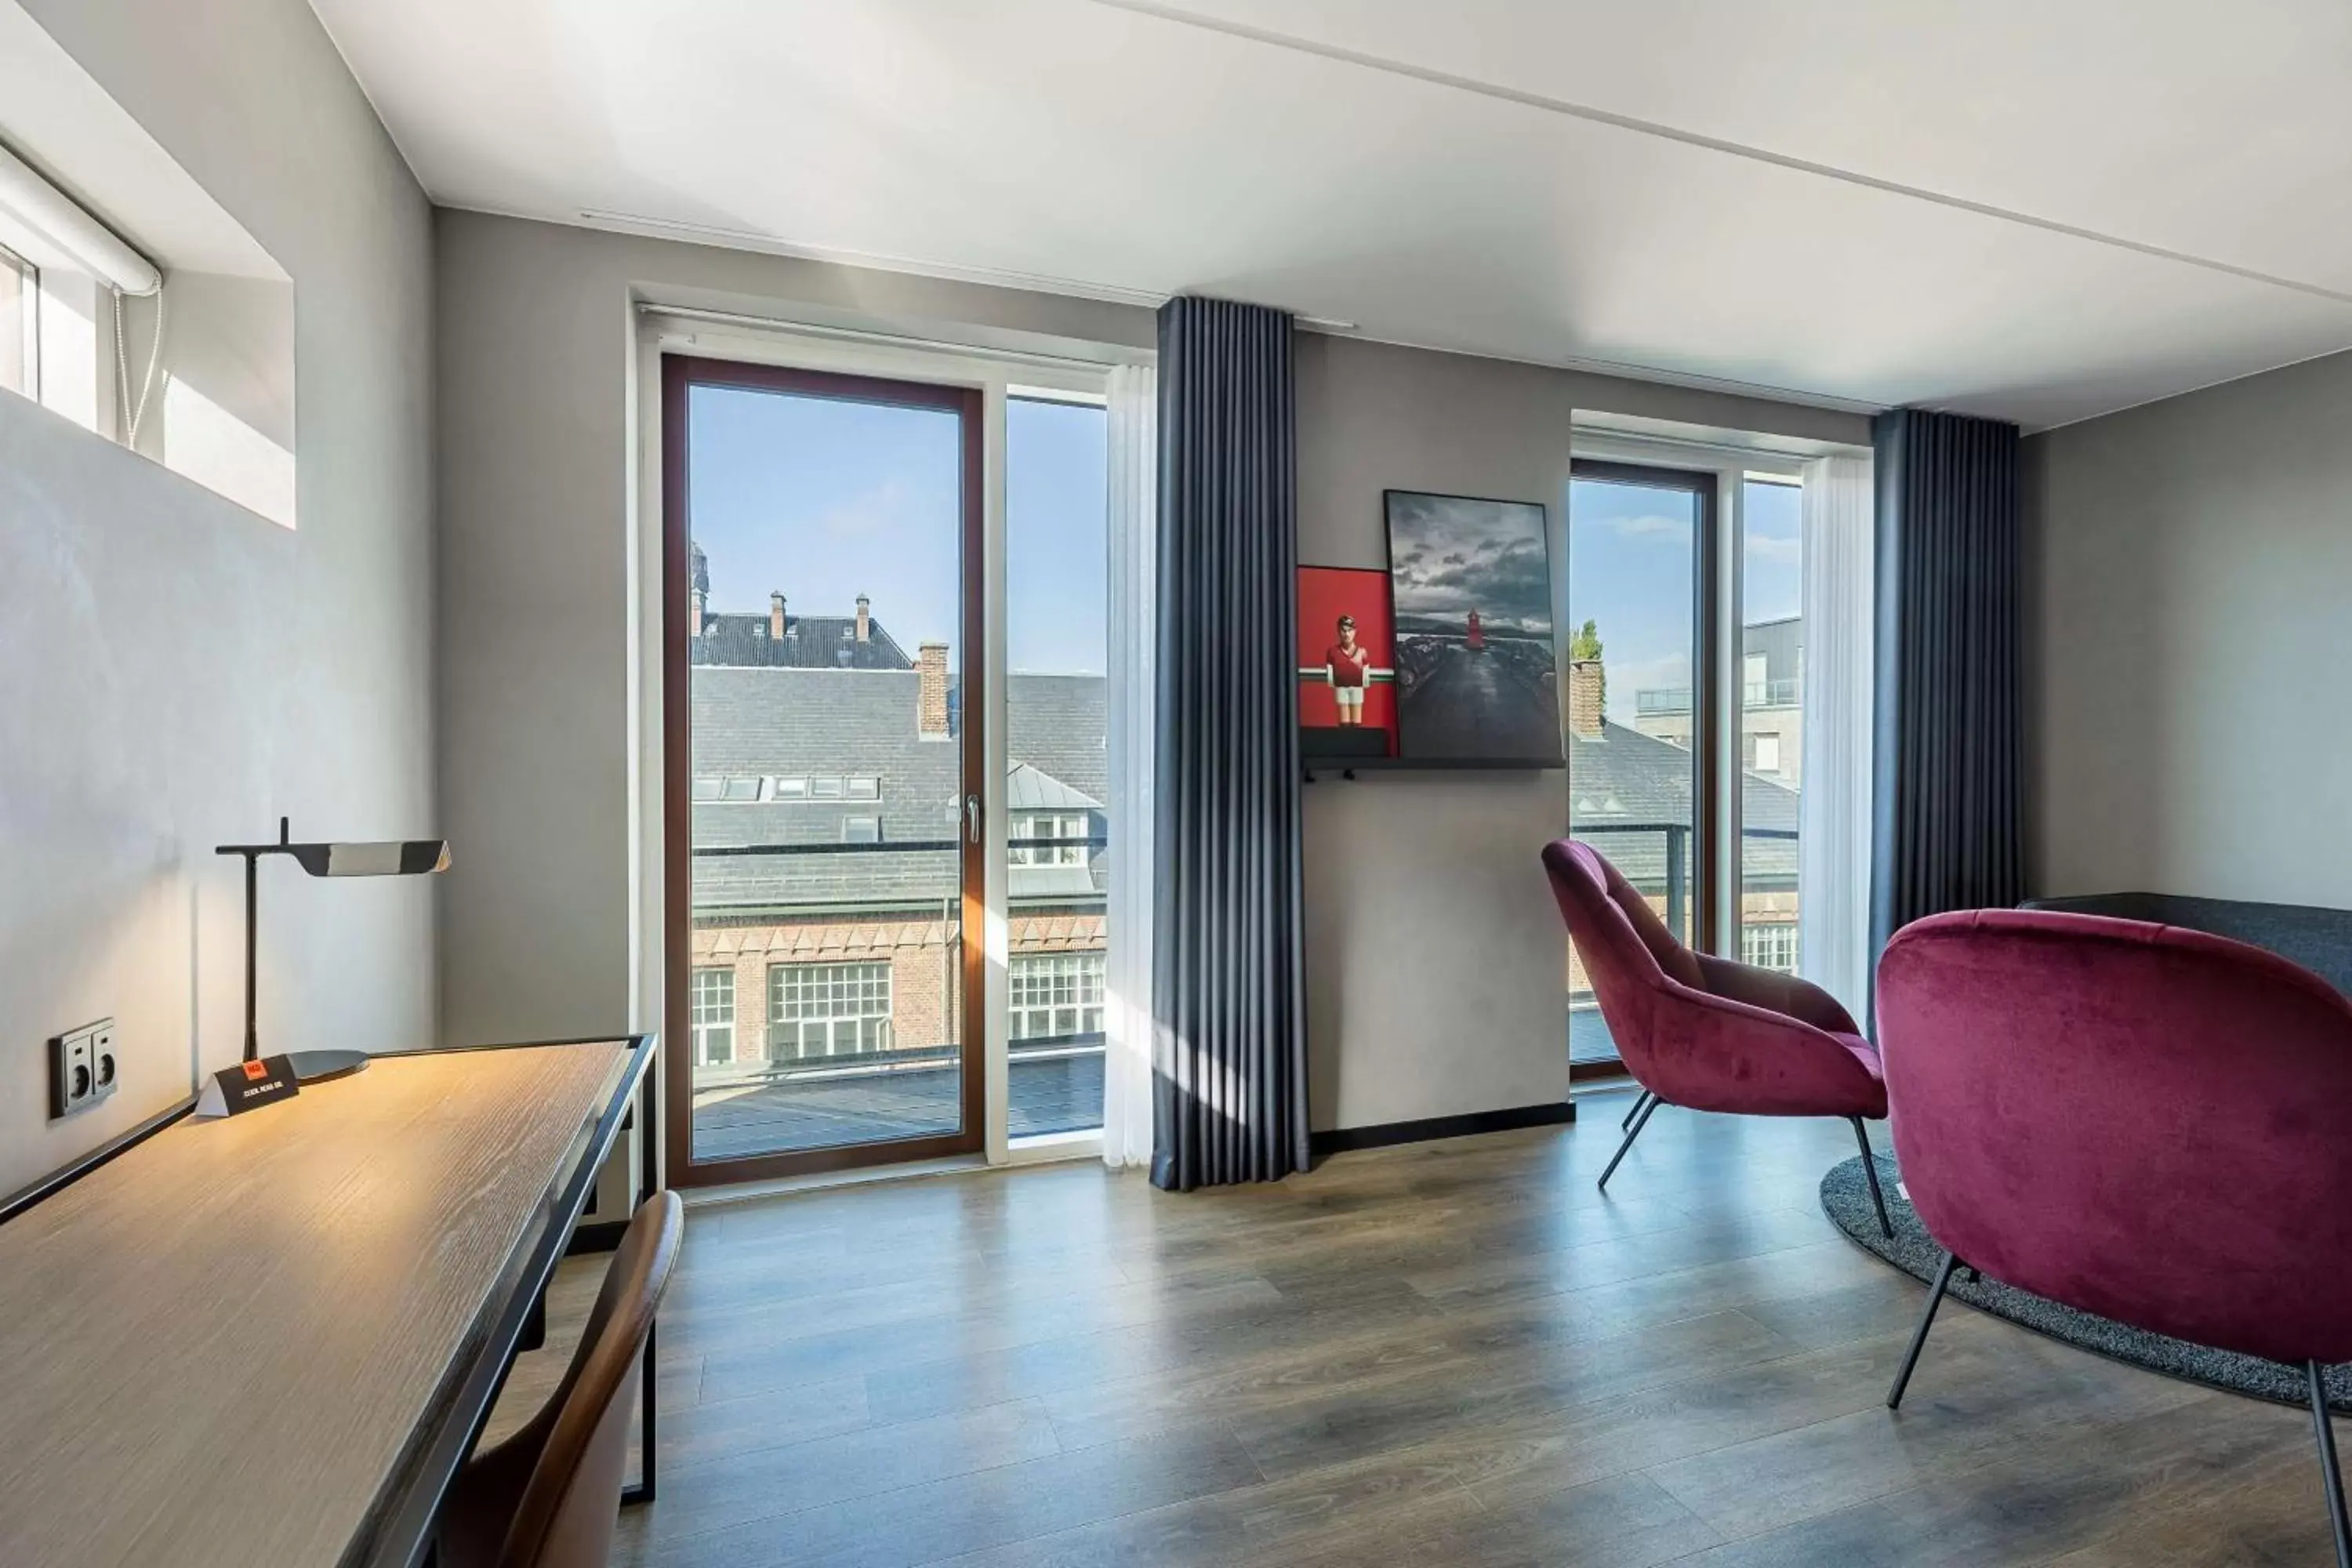 Bedroom in Radisson RED Aarhus